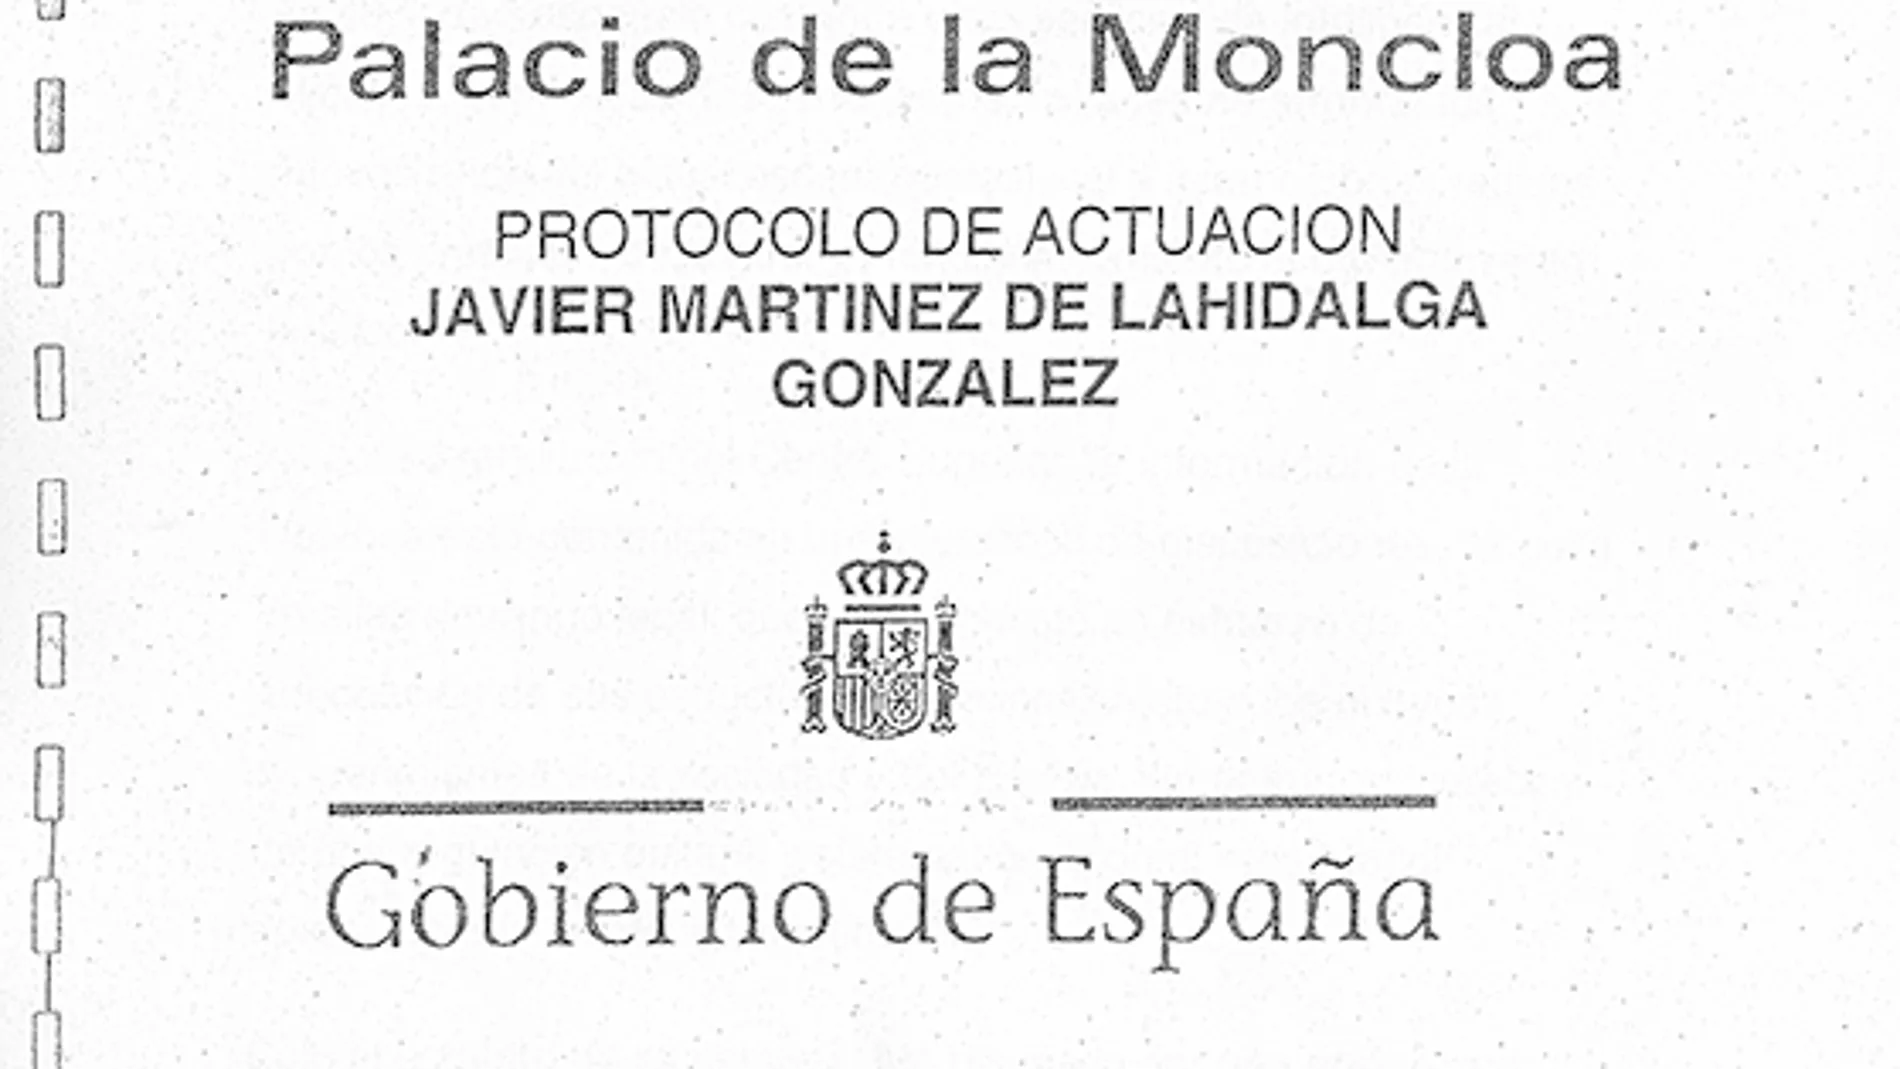 El tercer documento se denominaba «Palacio de La Moncloa, Protocolo de actuación, Javier Martínez de Lahidalga González». Contaba en su portada con su escudo constitucional y un código de barras.